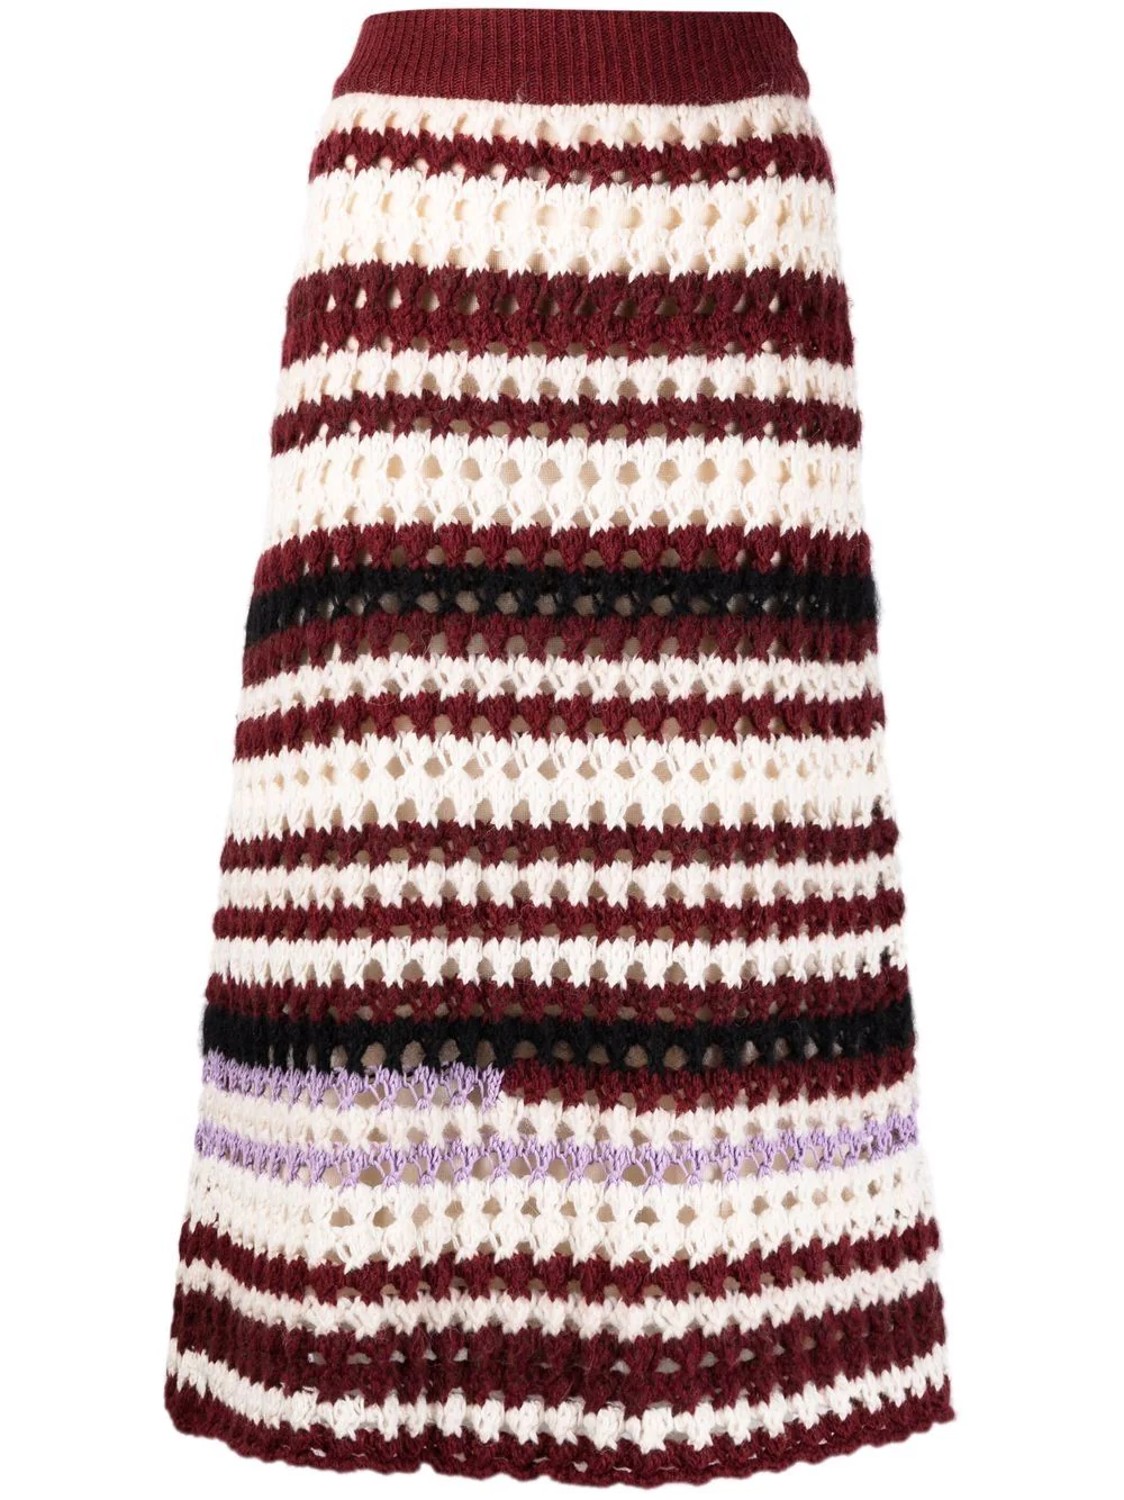 shop Marni  Gonne: Gonne Marni, midi, elastico in vita, vita alta, in lana crochet, a righe, senza tasche.

Composizione: 100% lana. number 2230